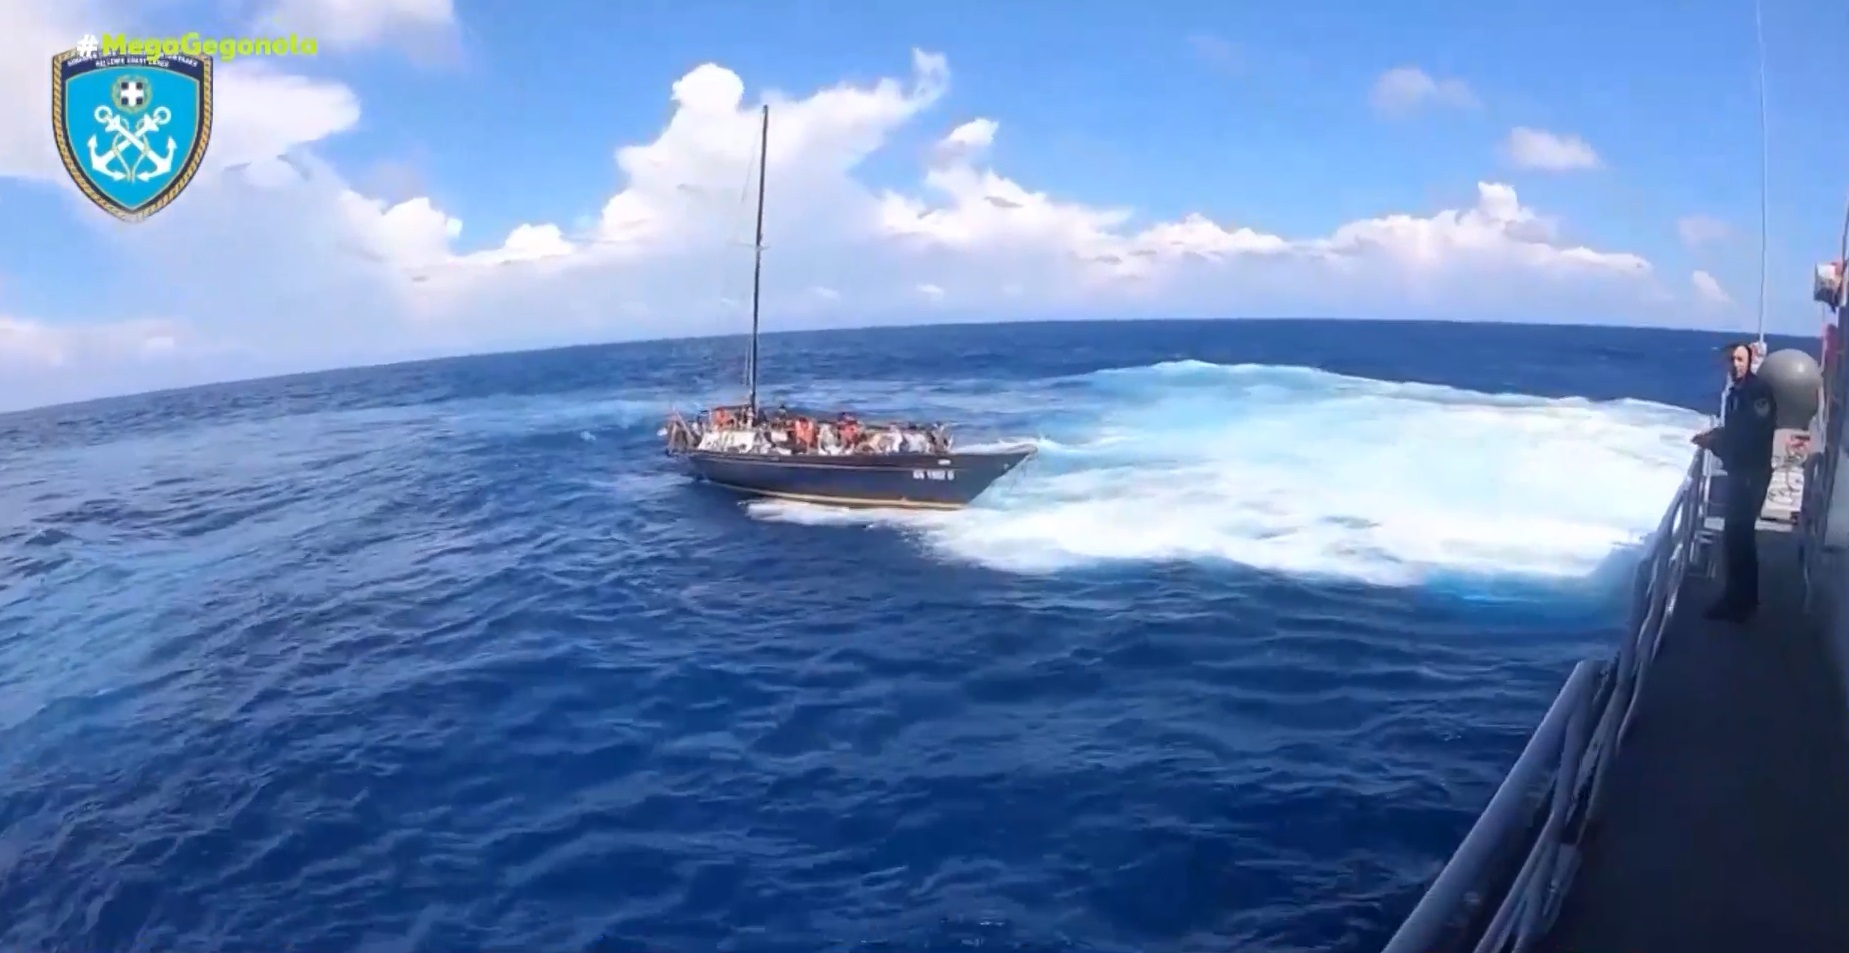 Διασώθηκαν 63 μετανάστες που επέβαιναν σε ιστιοφόρο σκάφος στο ακρωτήριο Ταίναρο